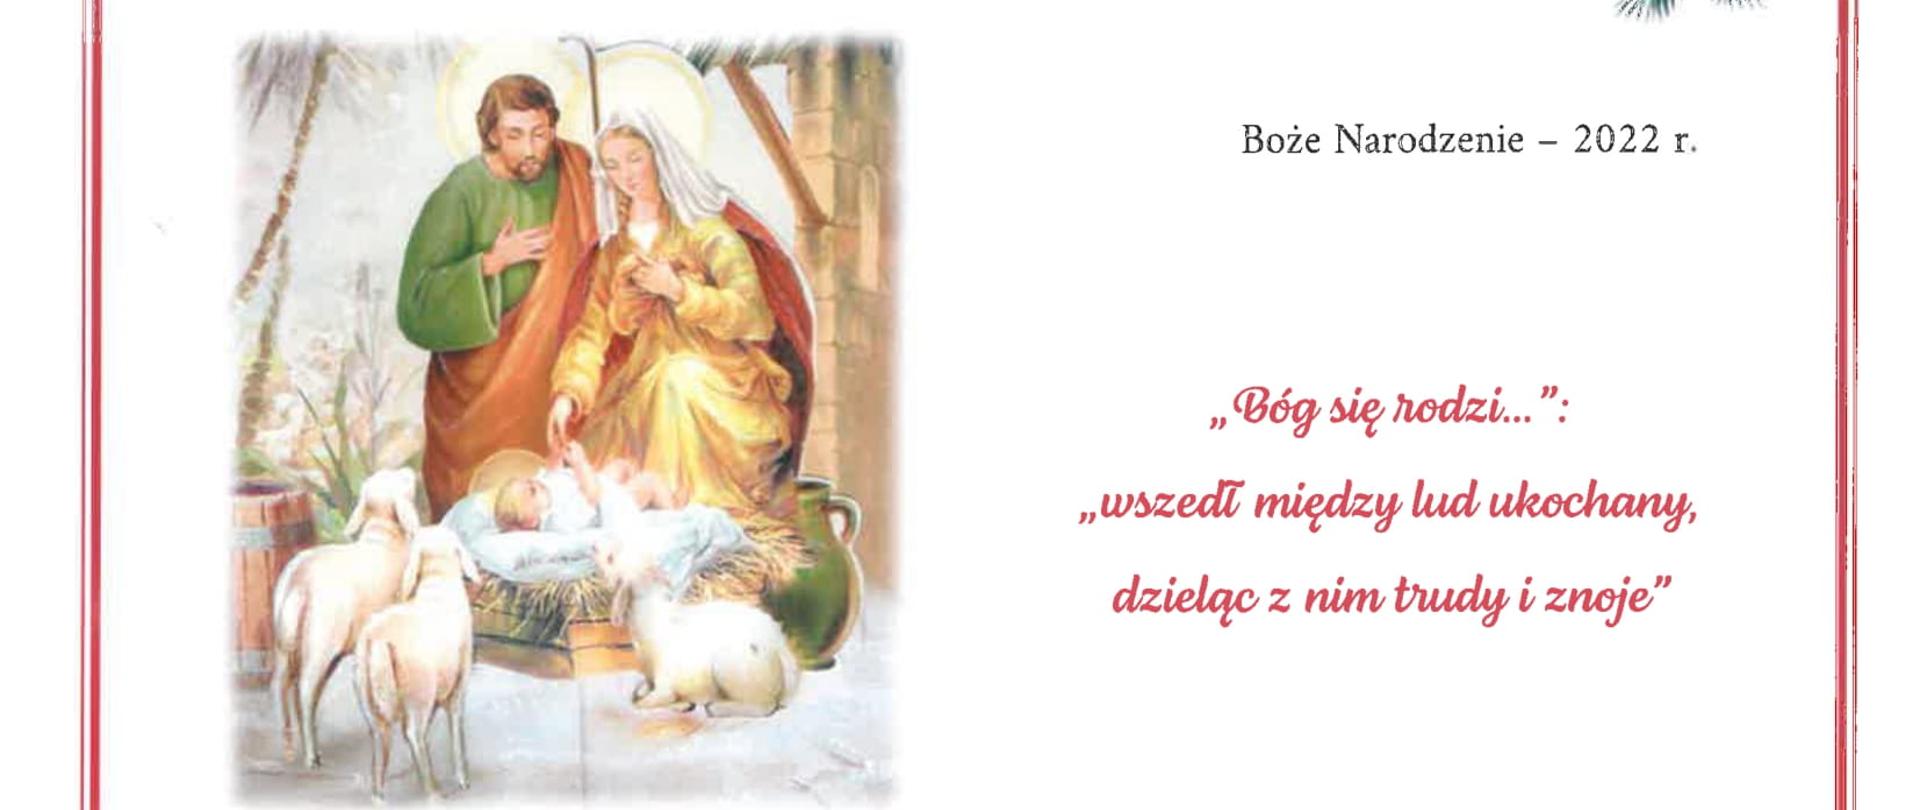 Życzenia Bożonarodzeniowe od Caritas Diecezji Rzeszowskiej
